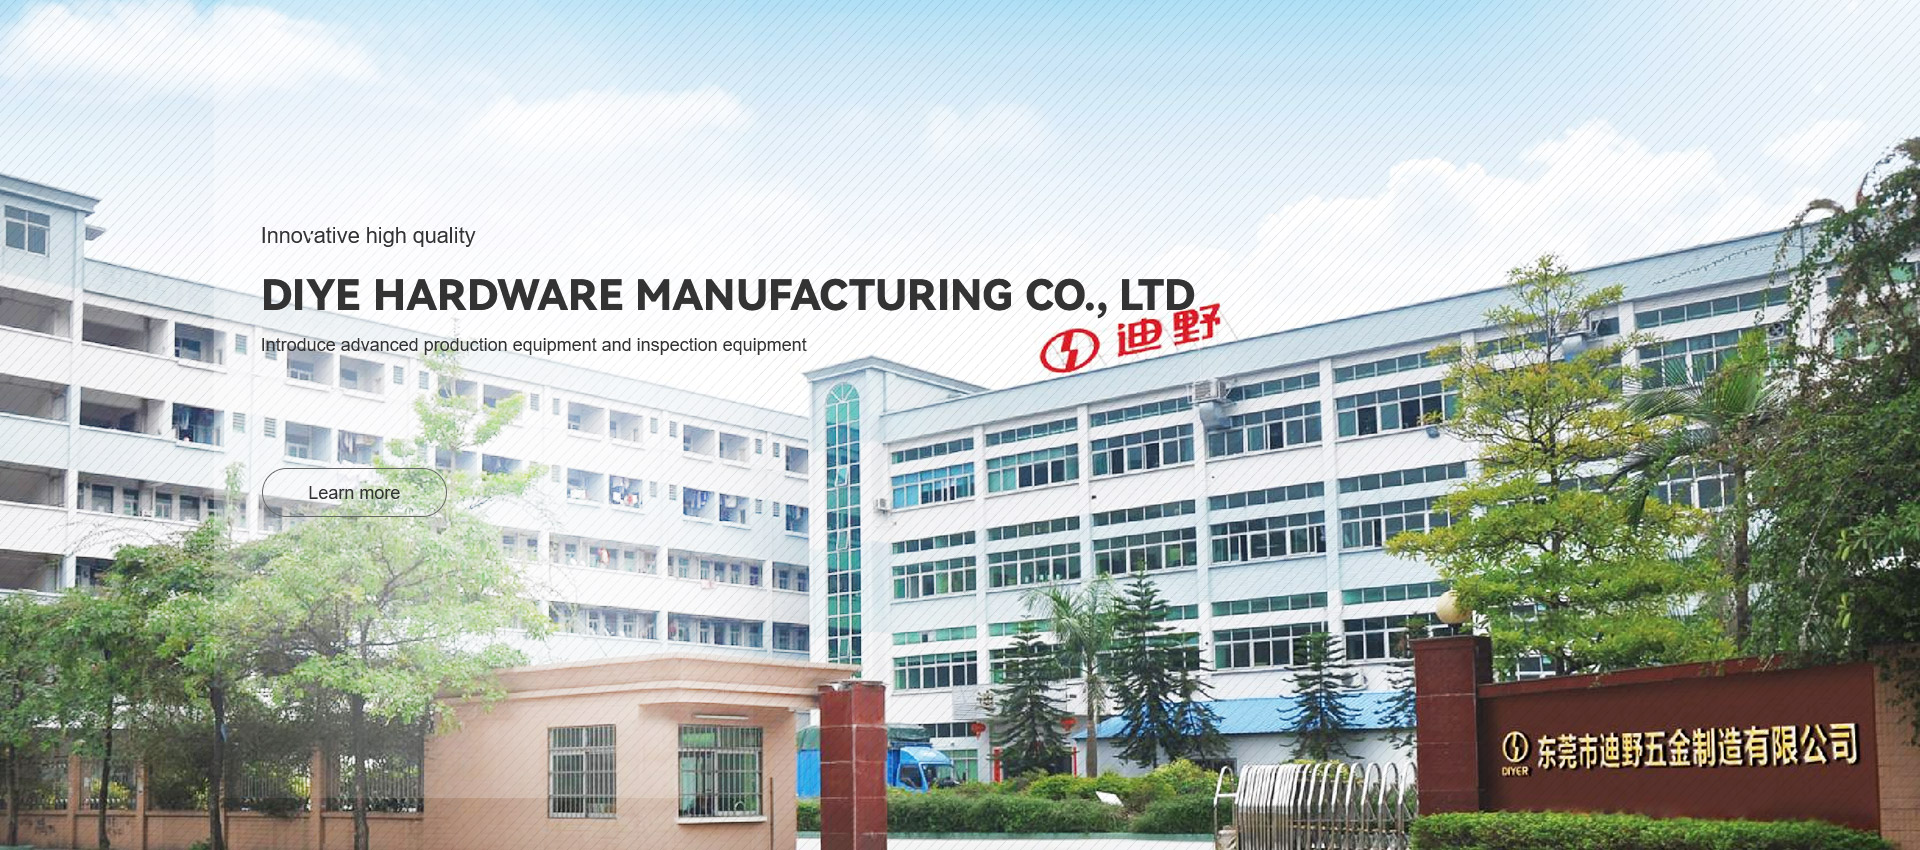 Dongguan Diye Hardware Manufacturing Co., Ltd.